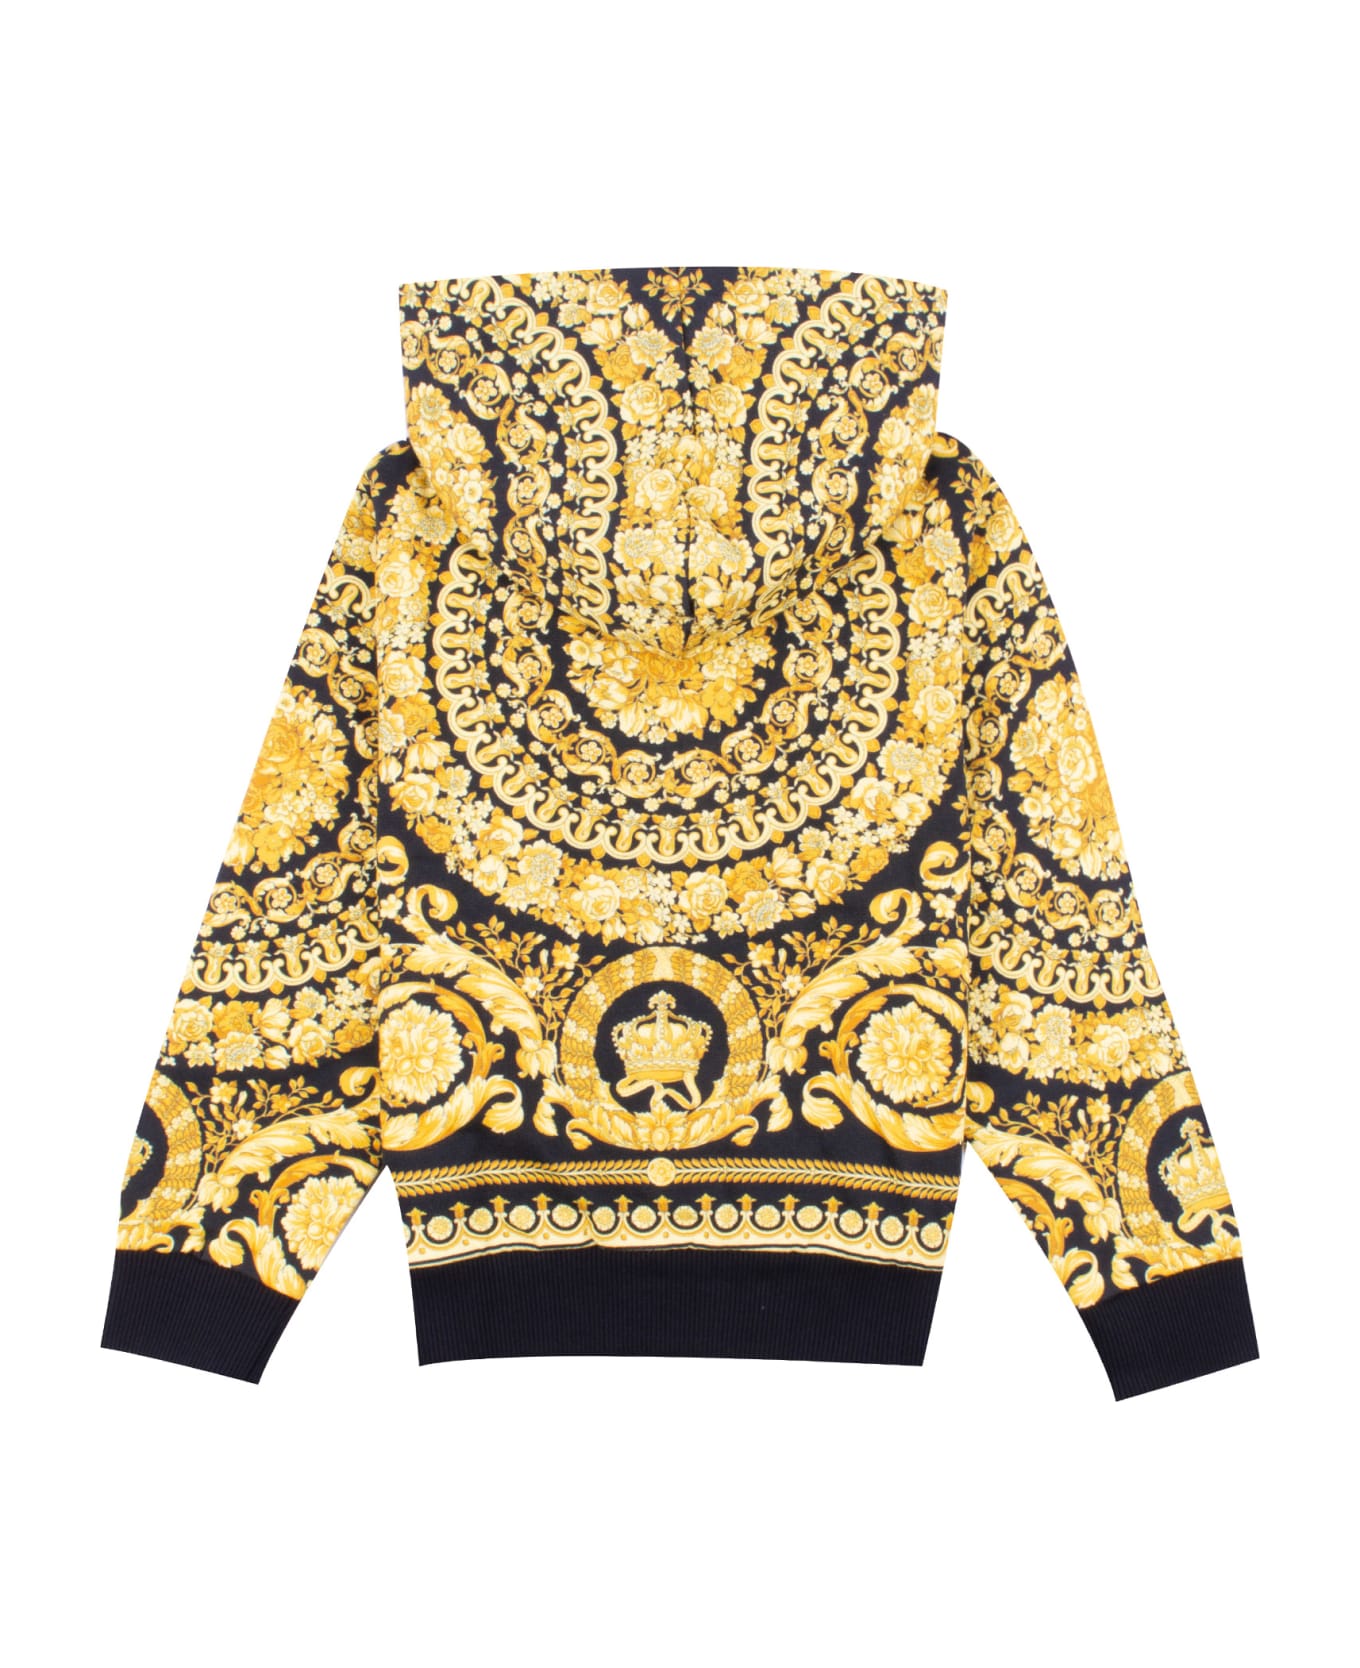 Versace Sweatshirt With Baroque Print - Multicolor